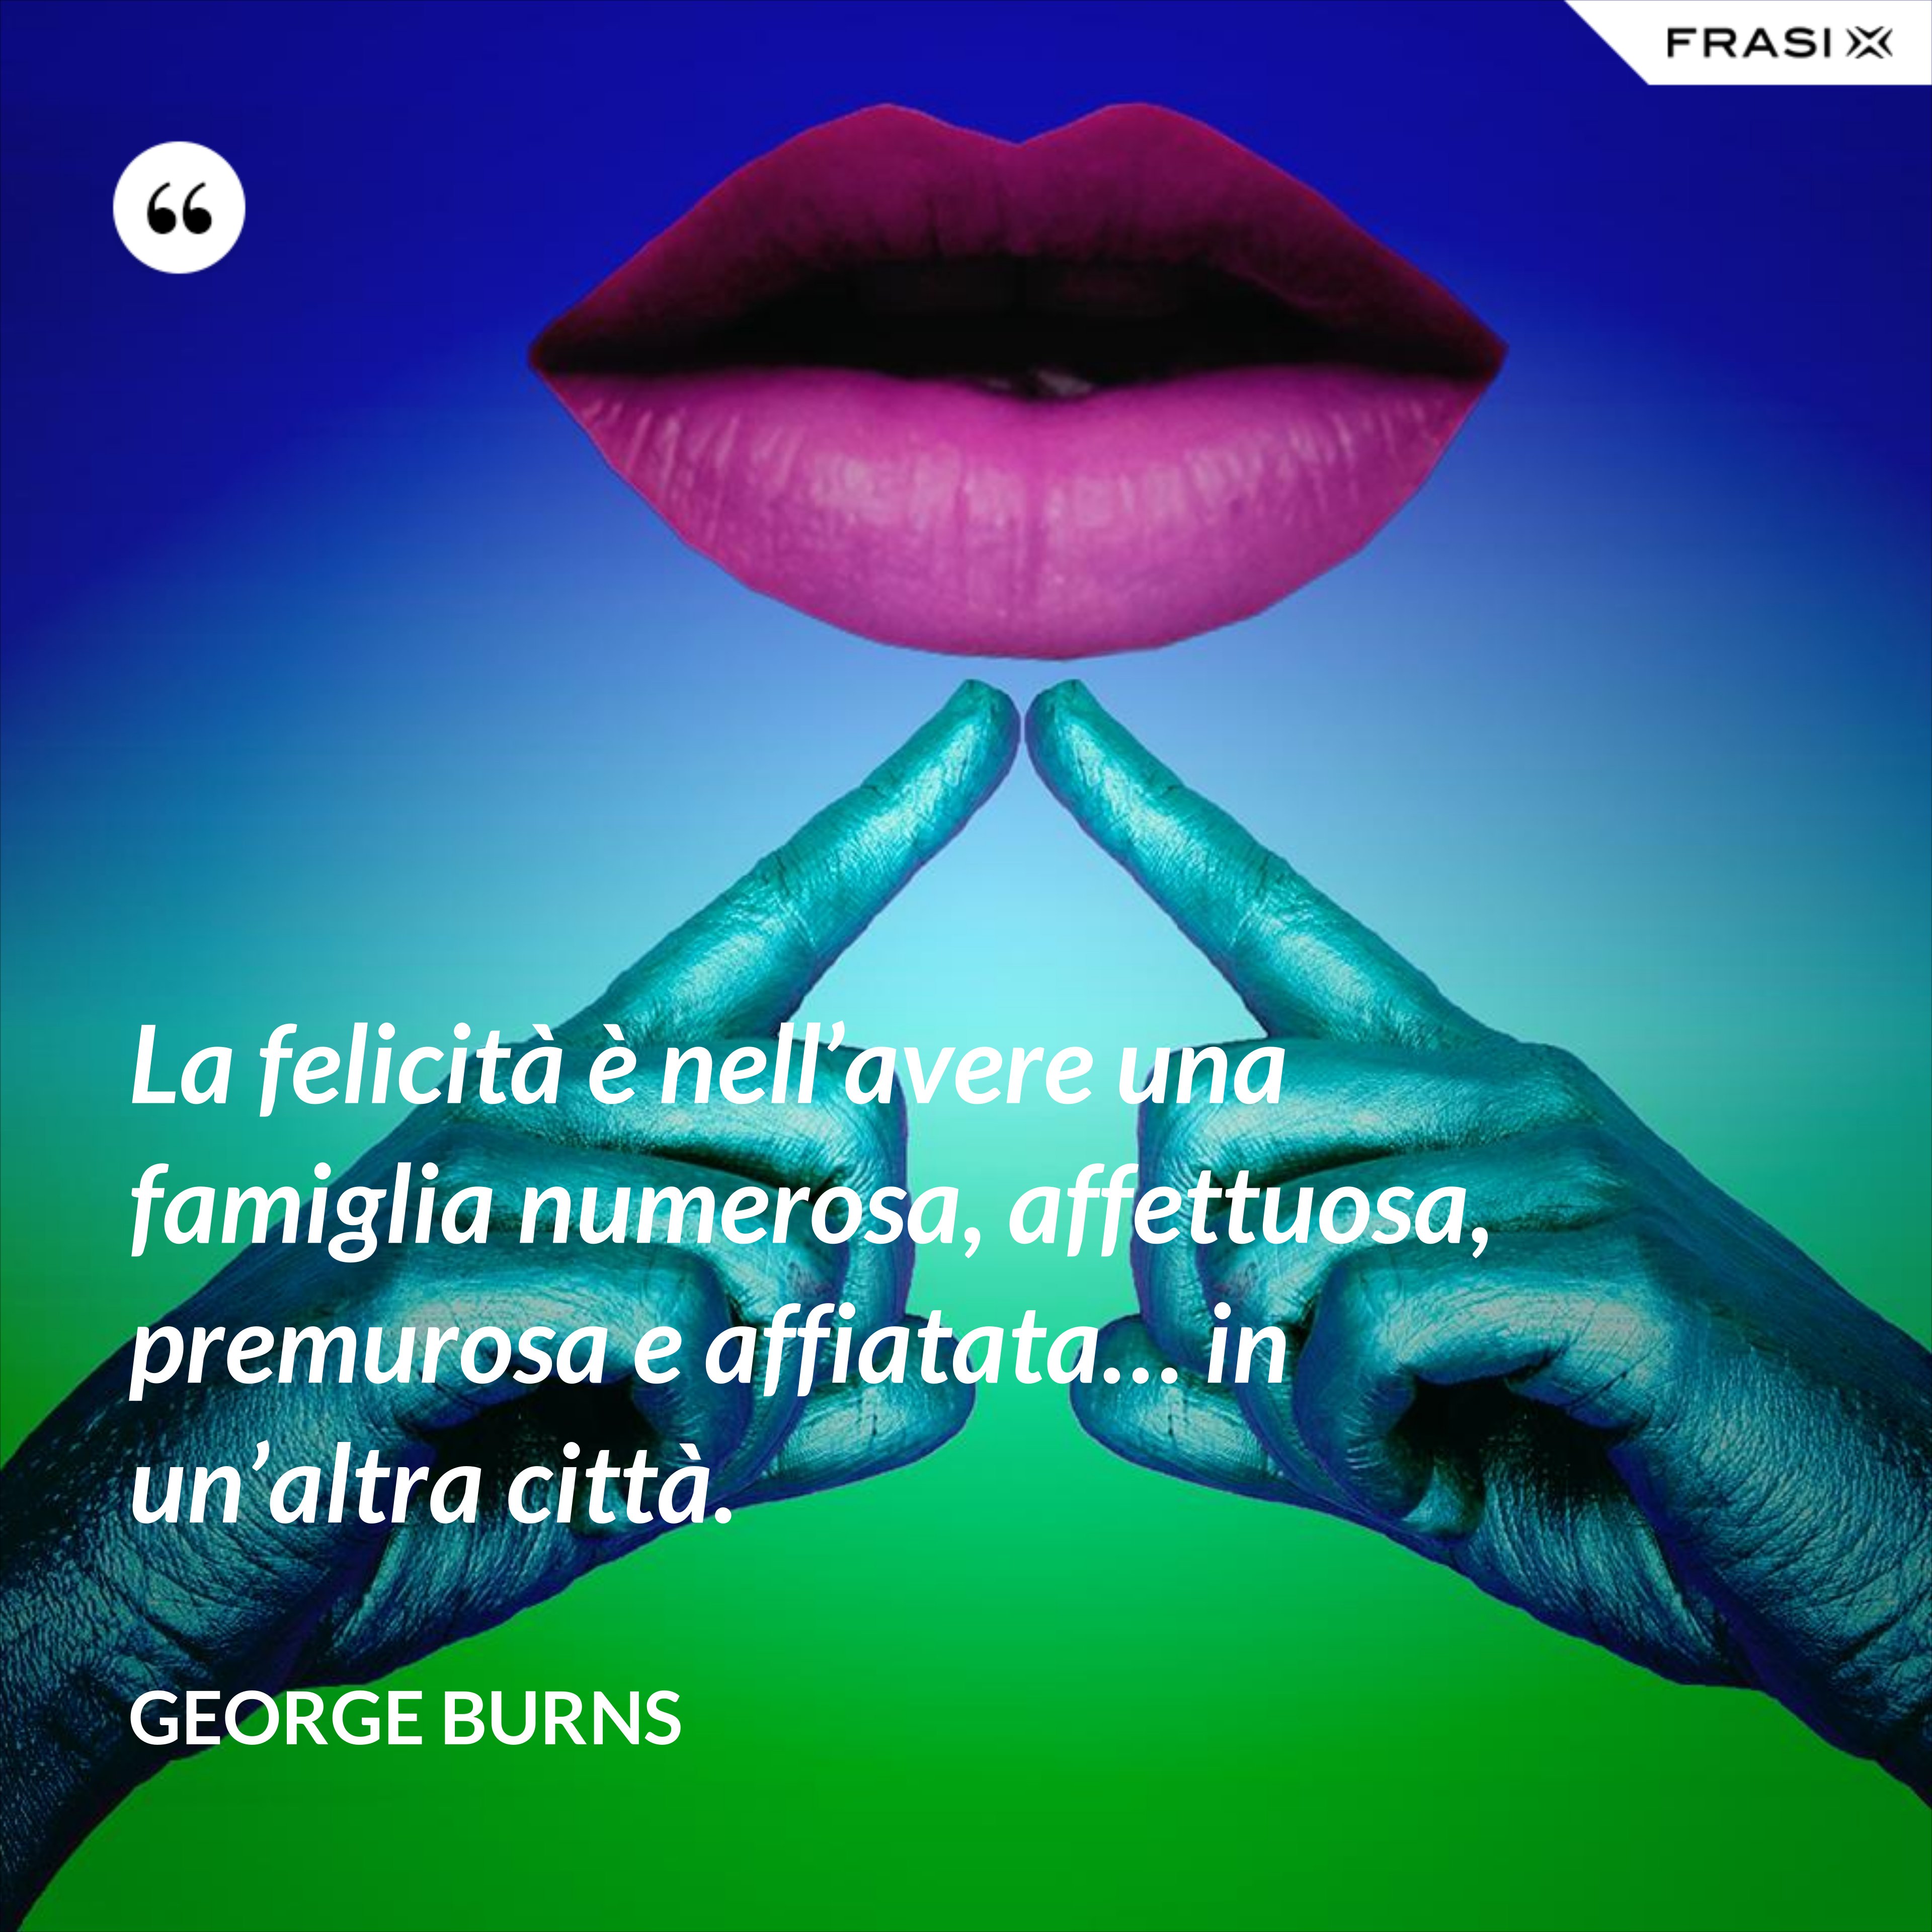 La felicità è nell’avere una famiglia numerosa, affettuosa, premurosa e affiatata… in un’altra città. - George Burns